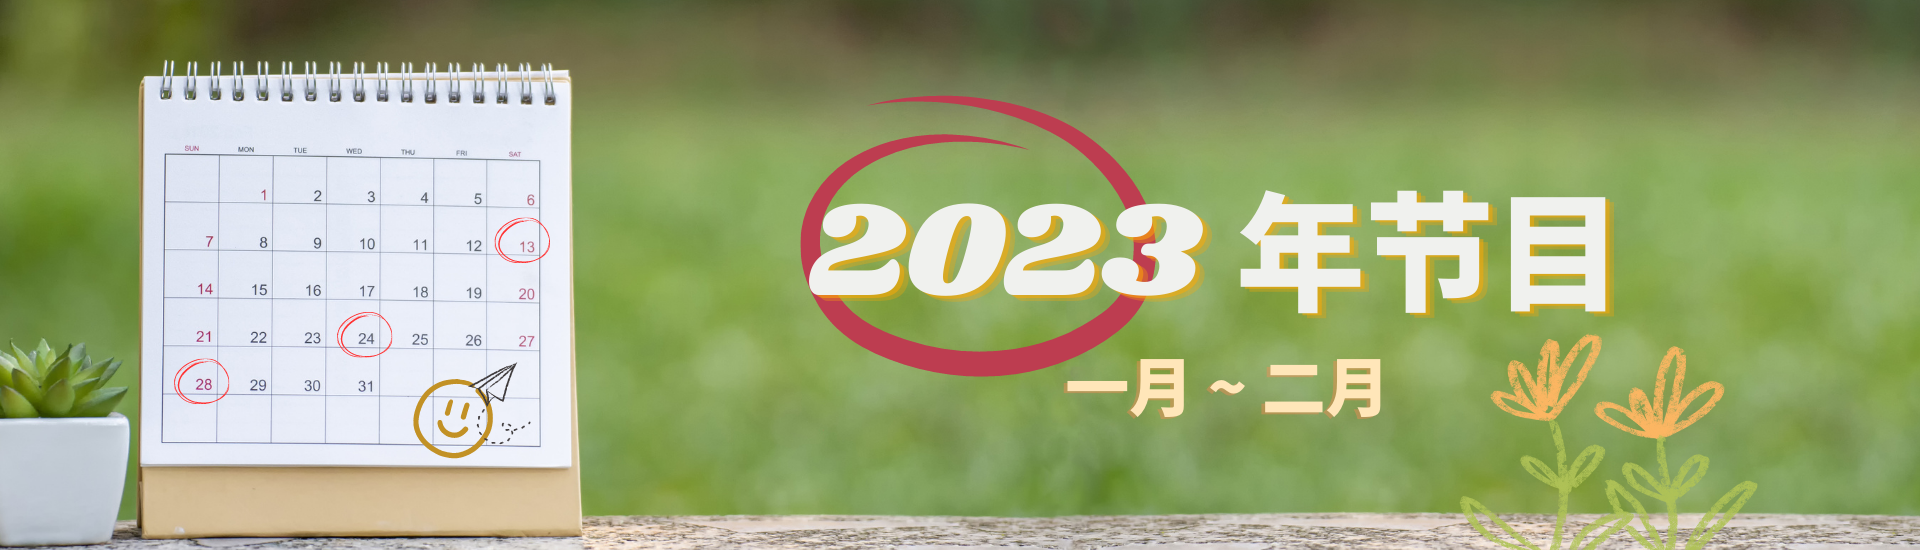 Programme 2023 JAN-FEB (CHI)